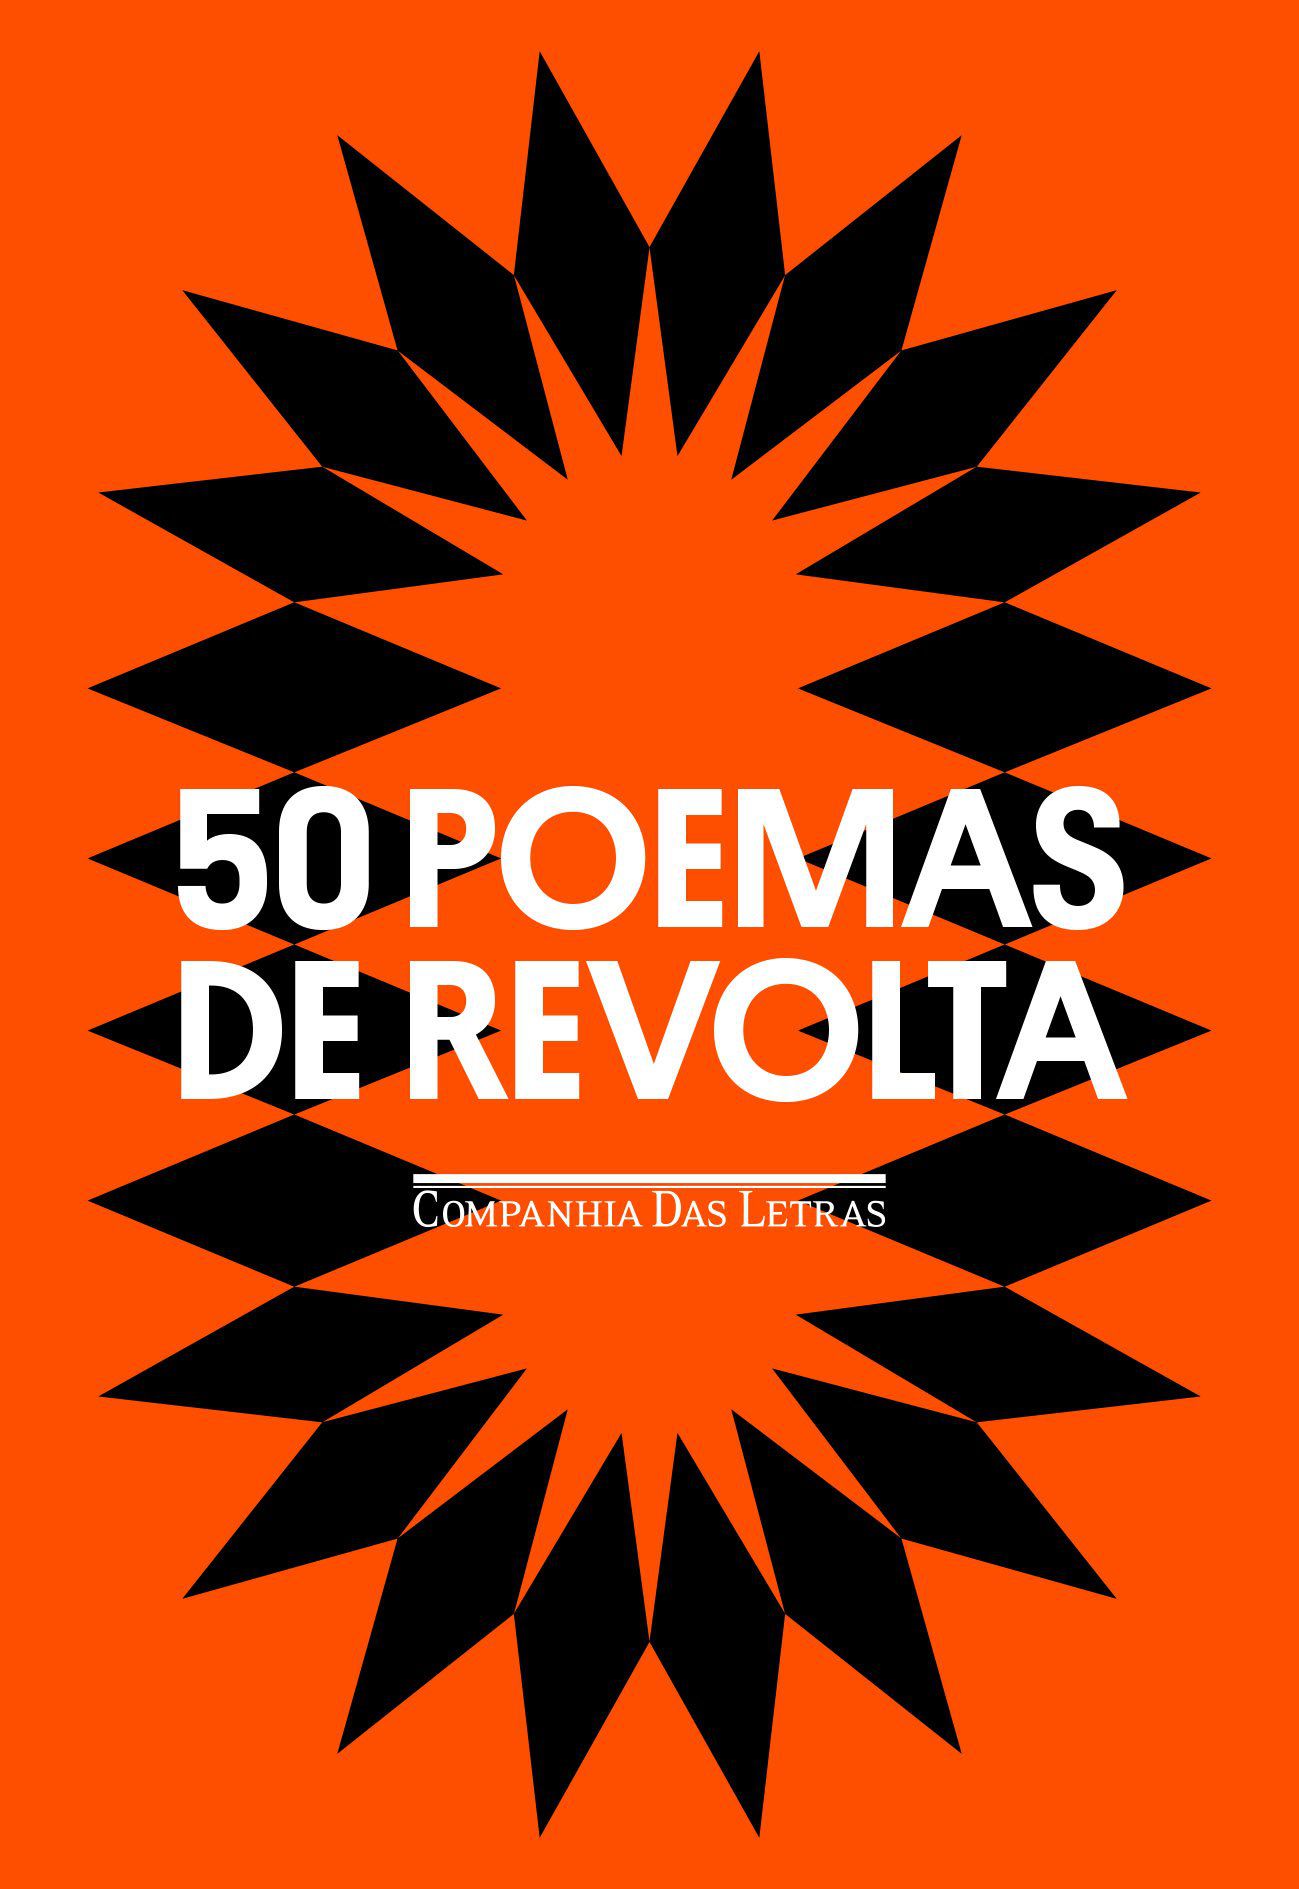 50 poemas de revolta